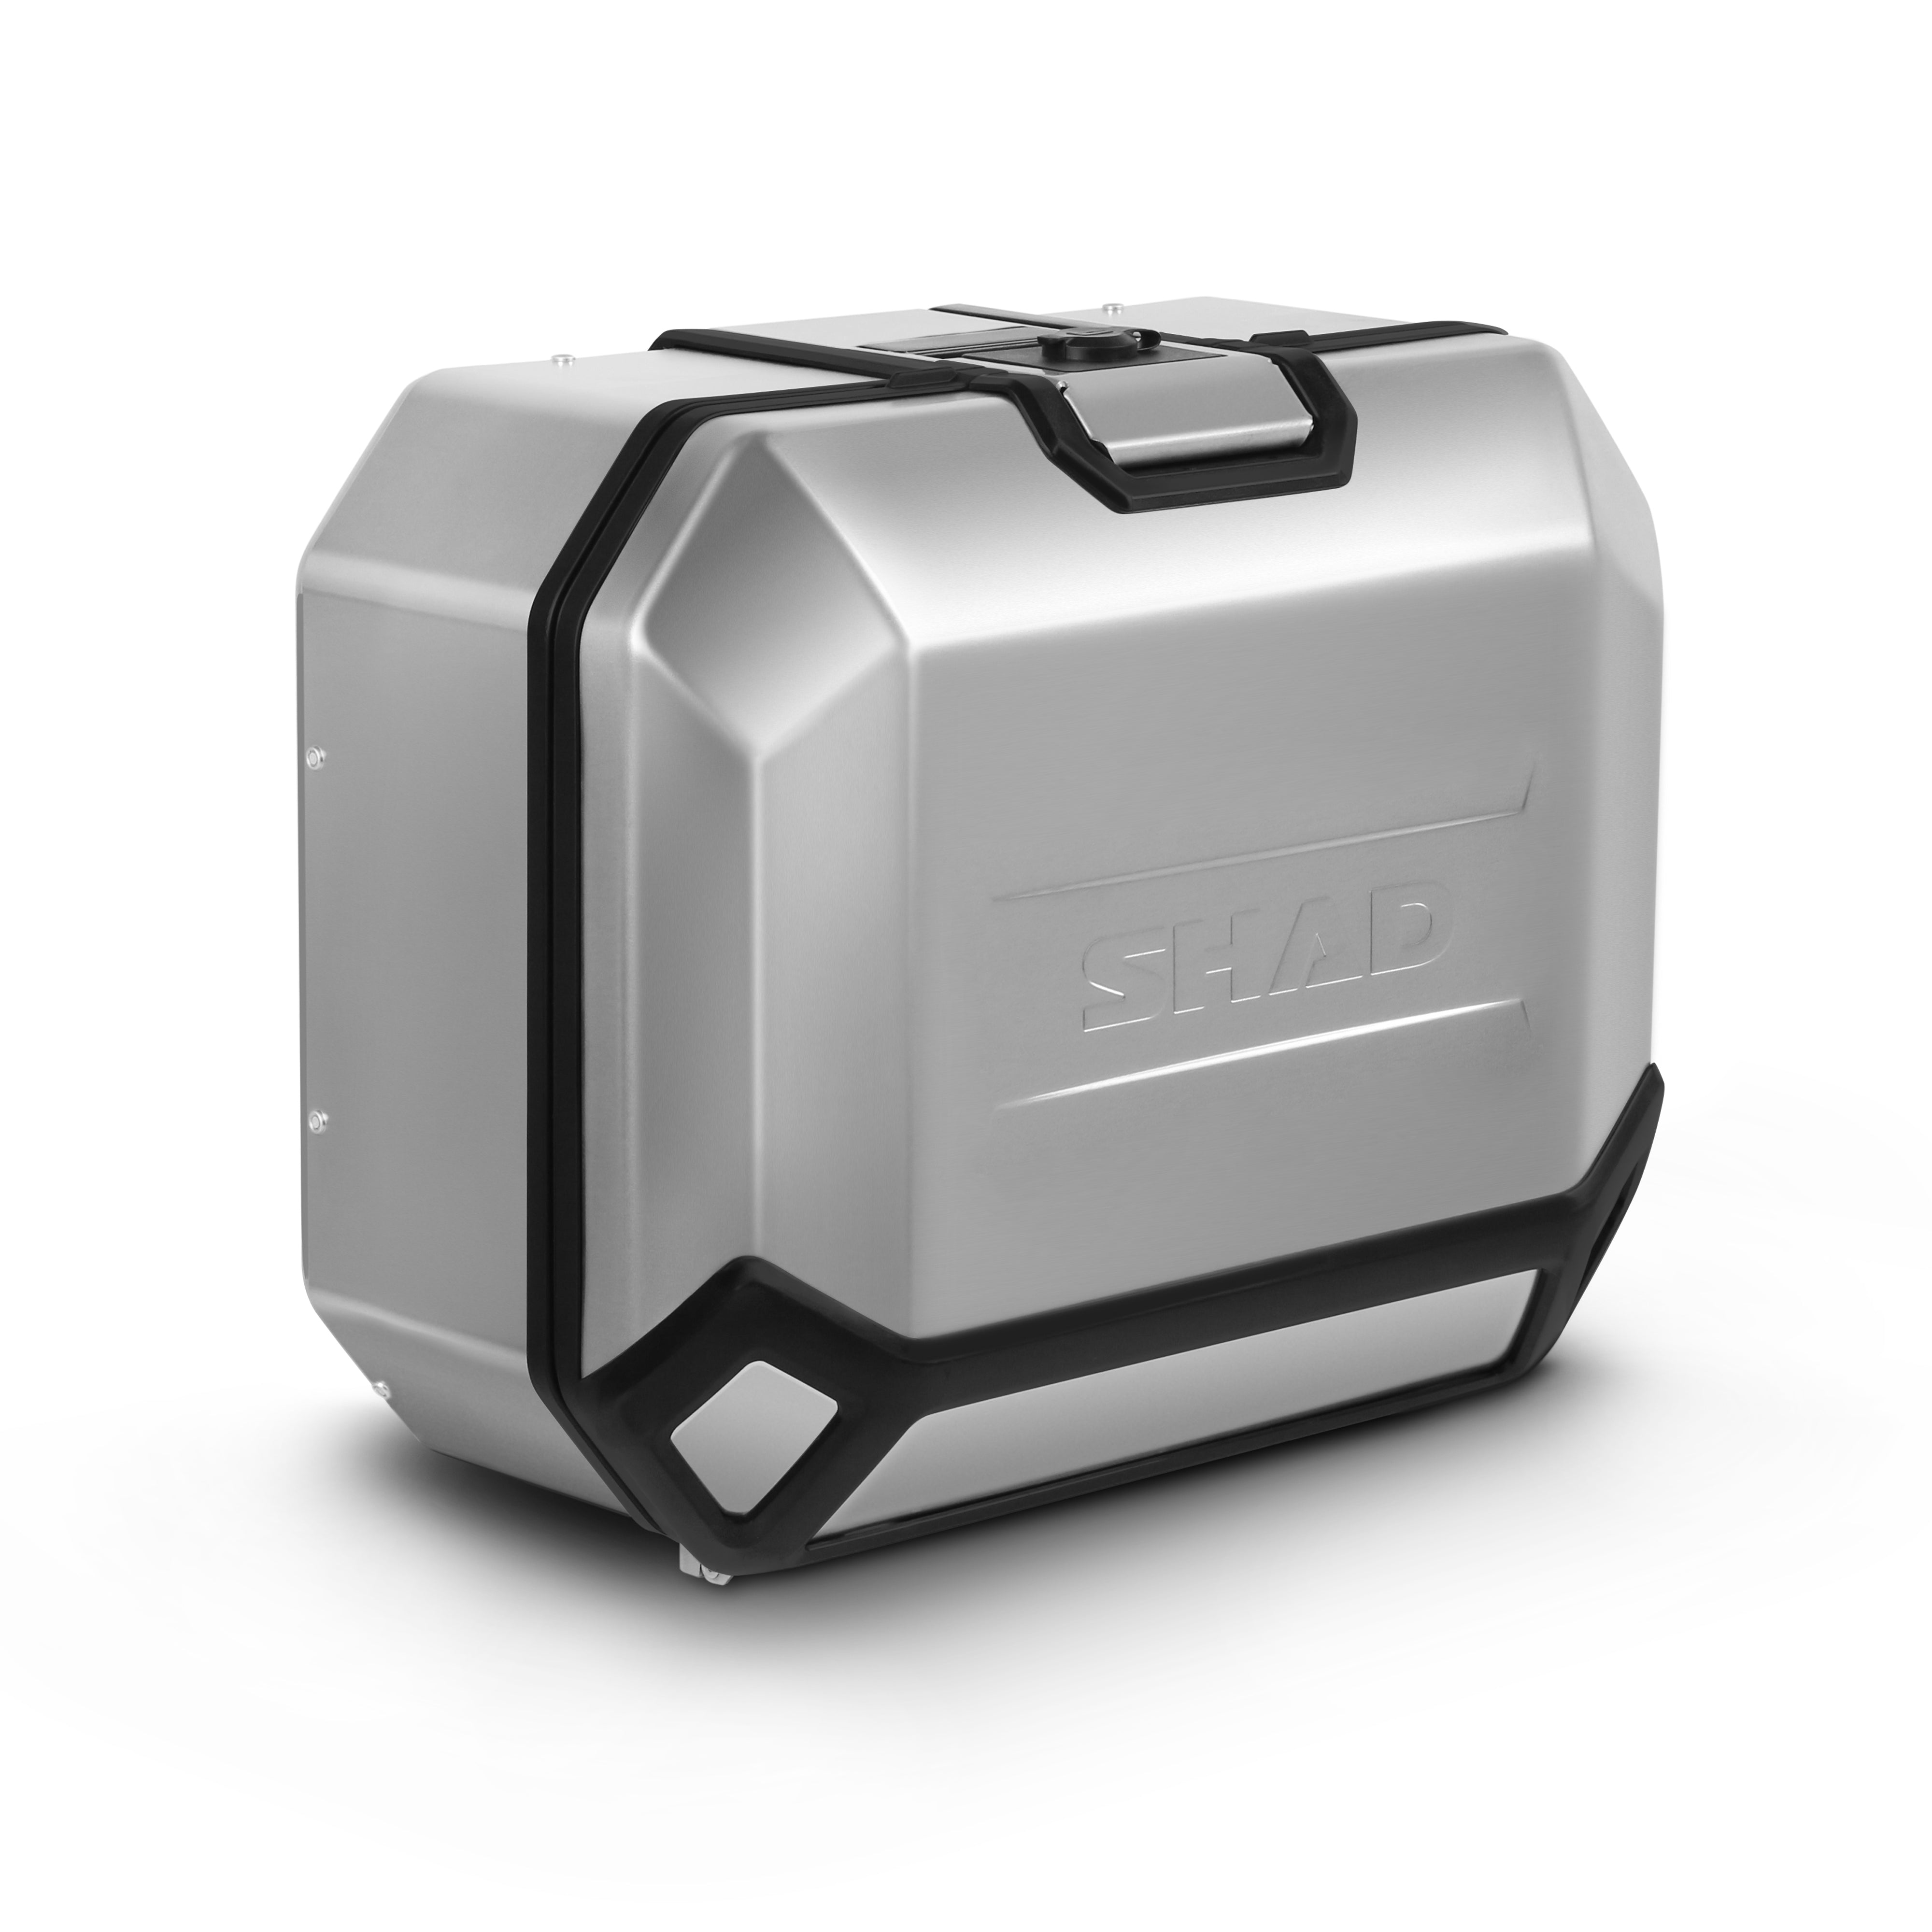 SHAD® S0Q800 - Quad/ATV 80 Luggage Case